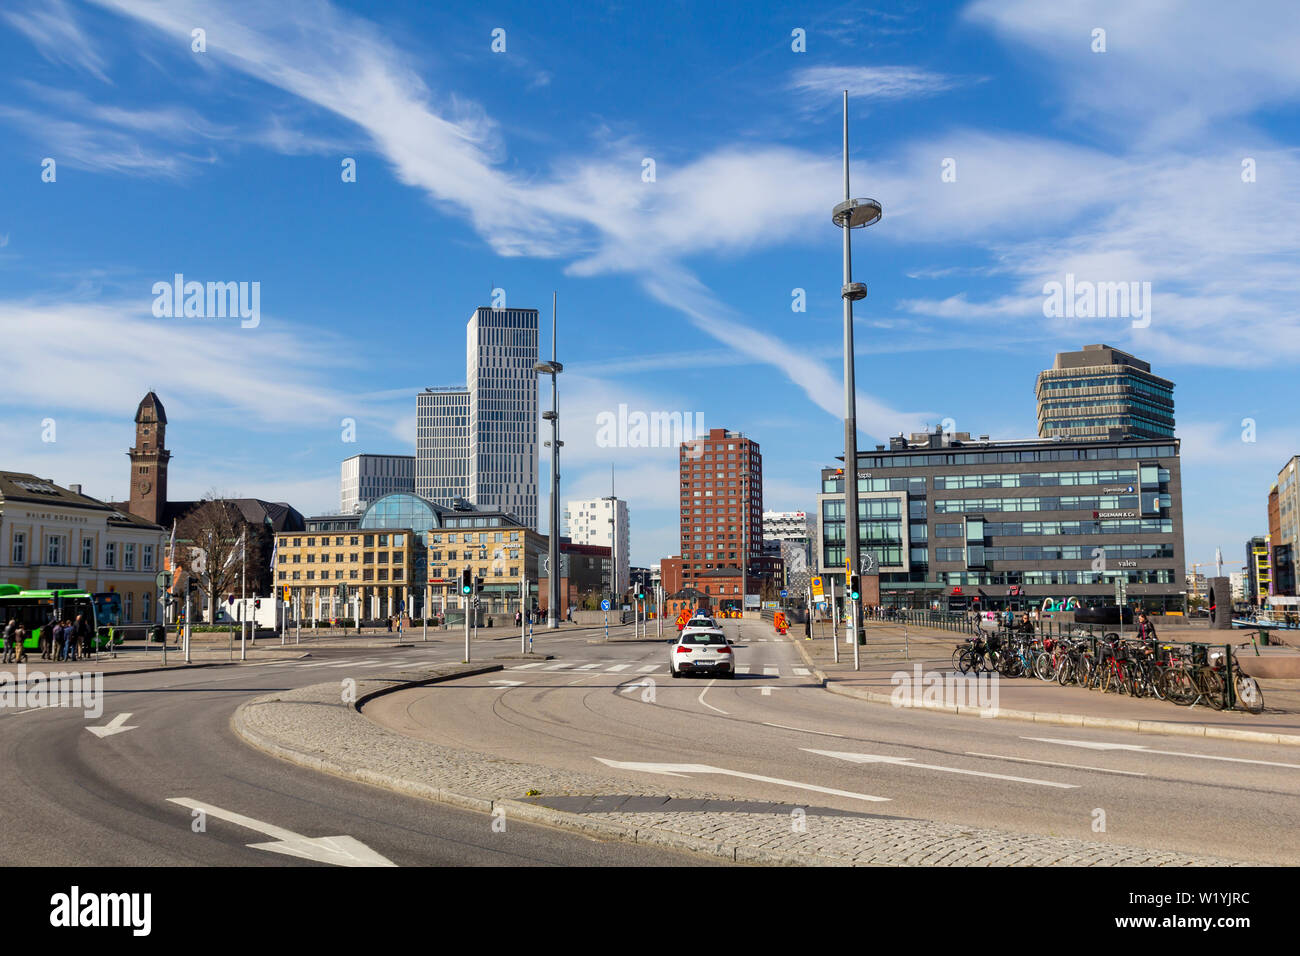 Street view e architettura moderna in Malmo, la terza città più grande in Svezia Foto Stock